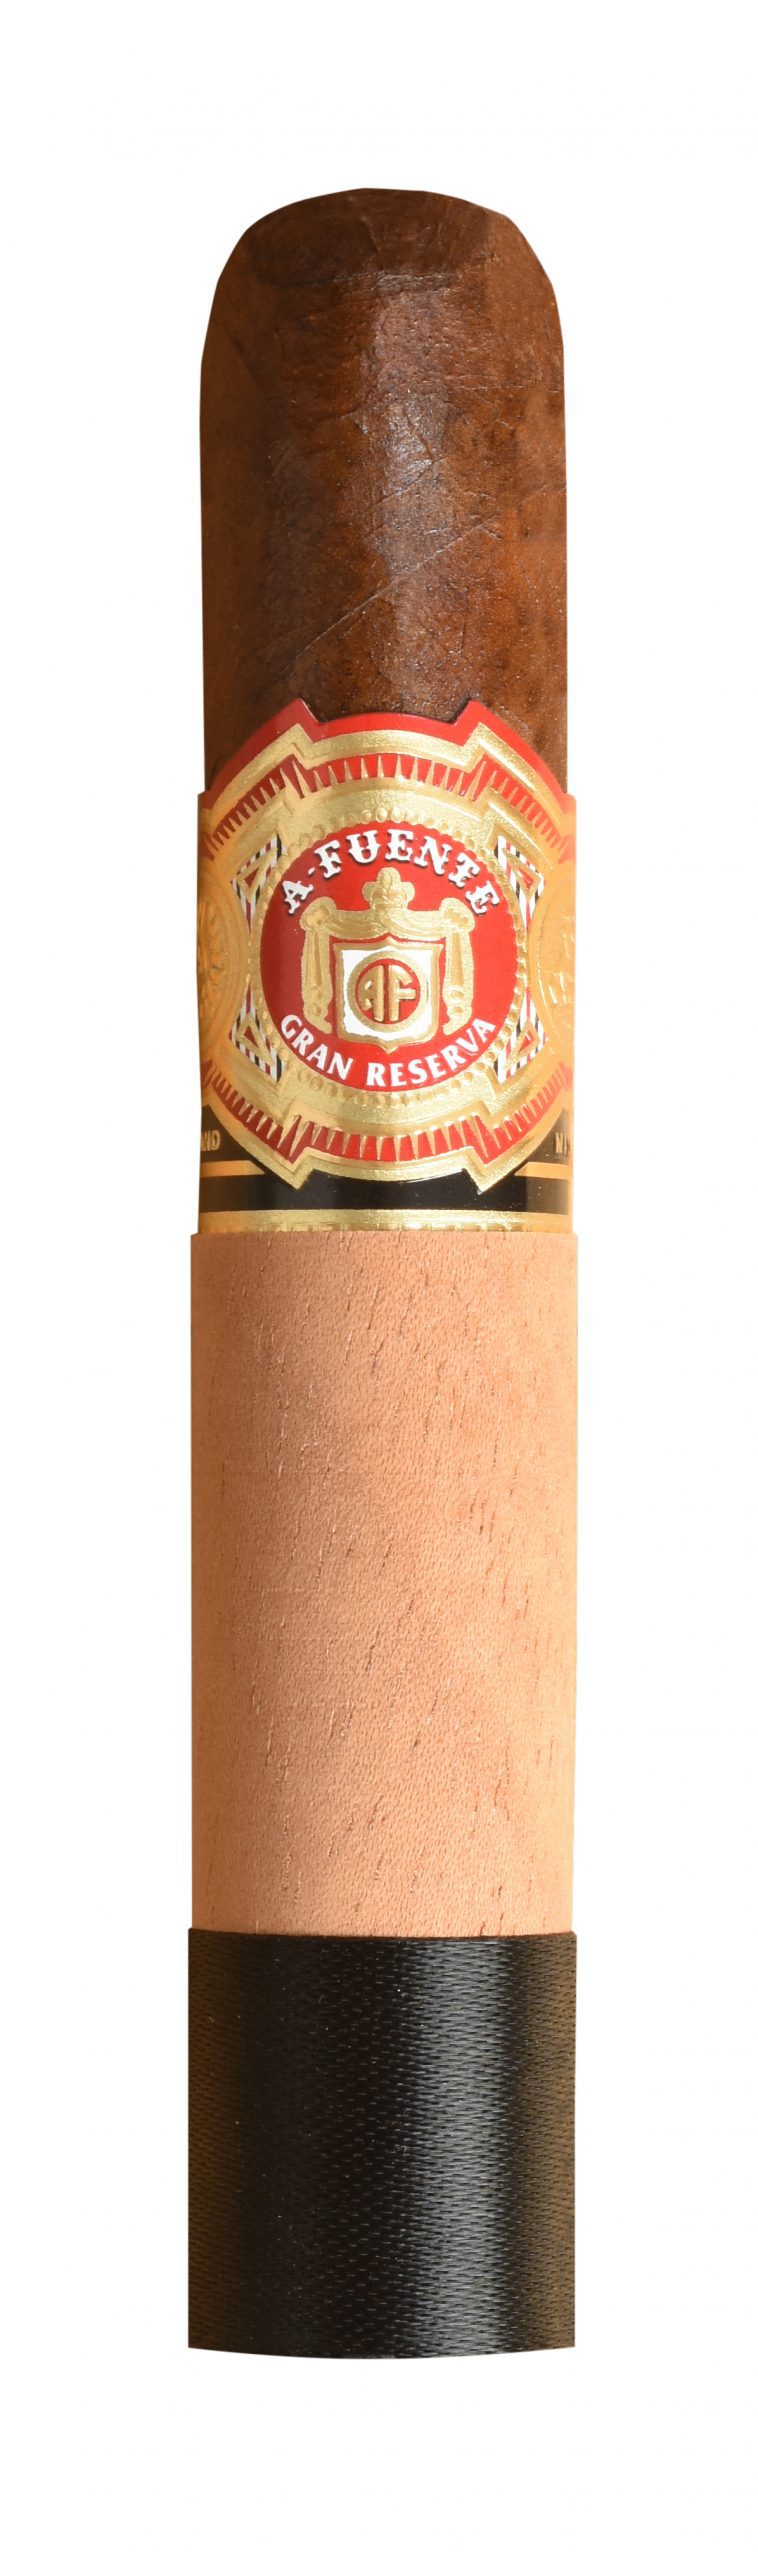 Single Arturo Fuente Chateau Fuente Sungrown cigar